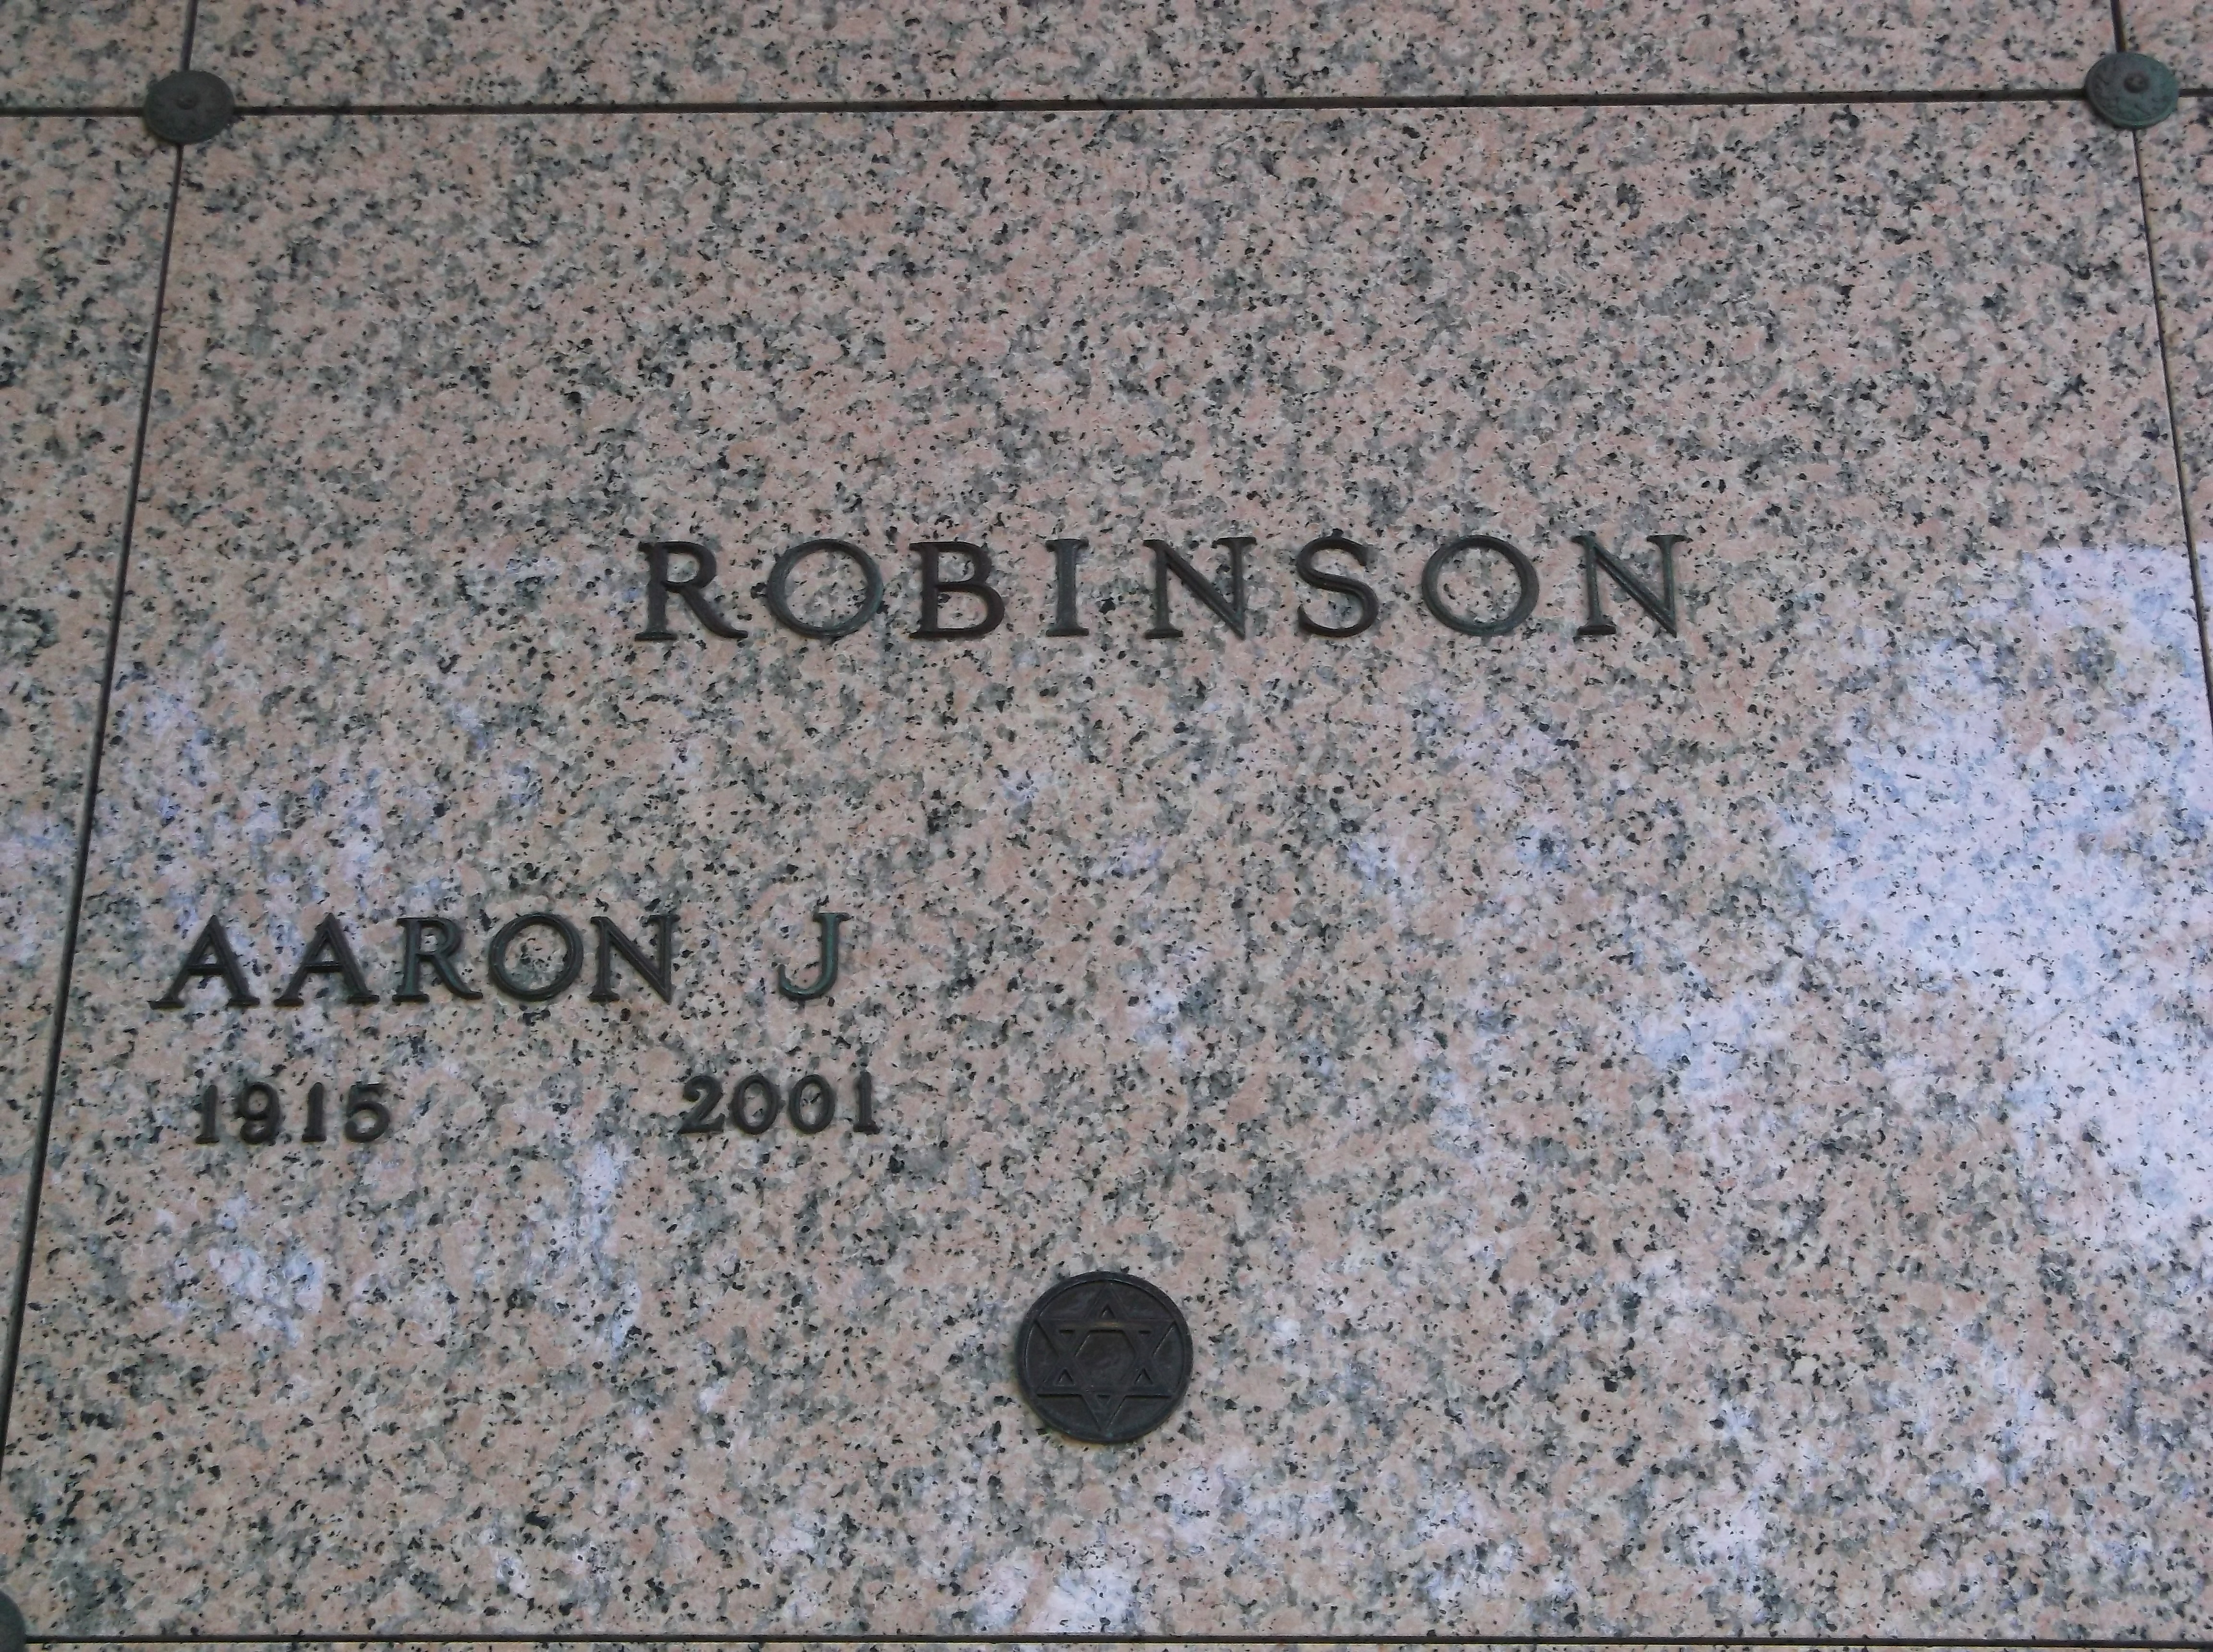 Aaron J Robinson